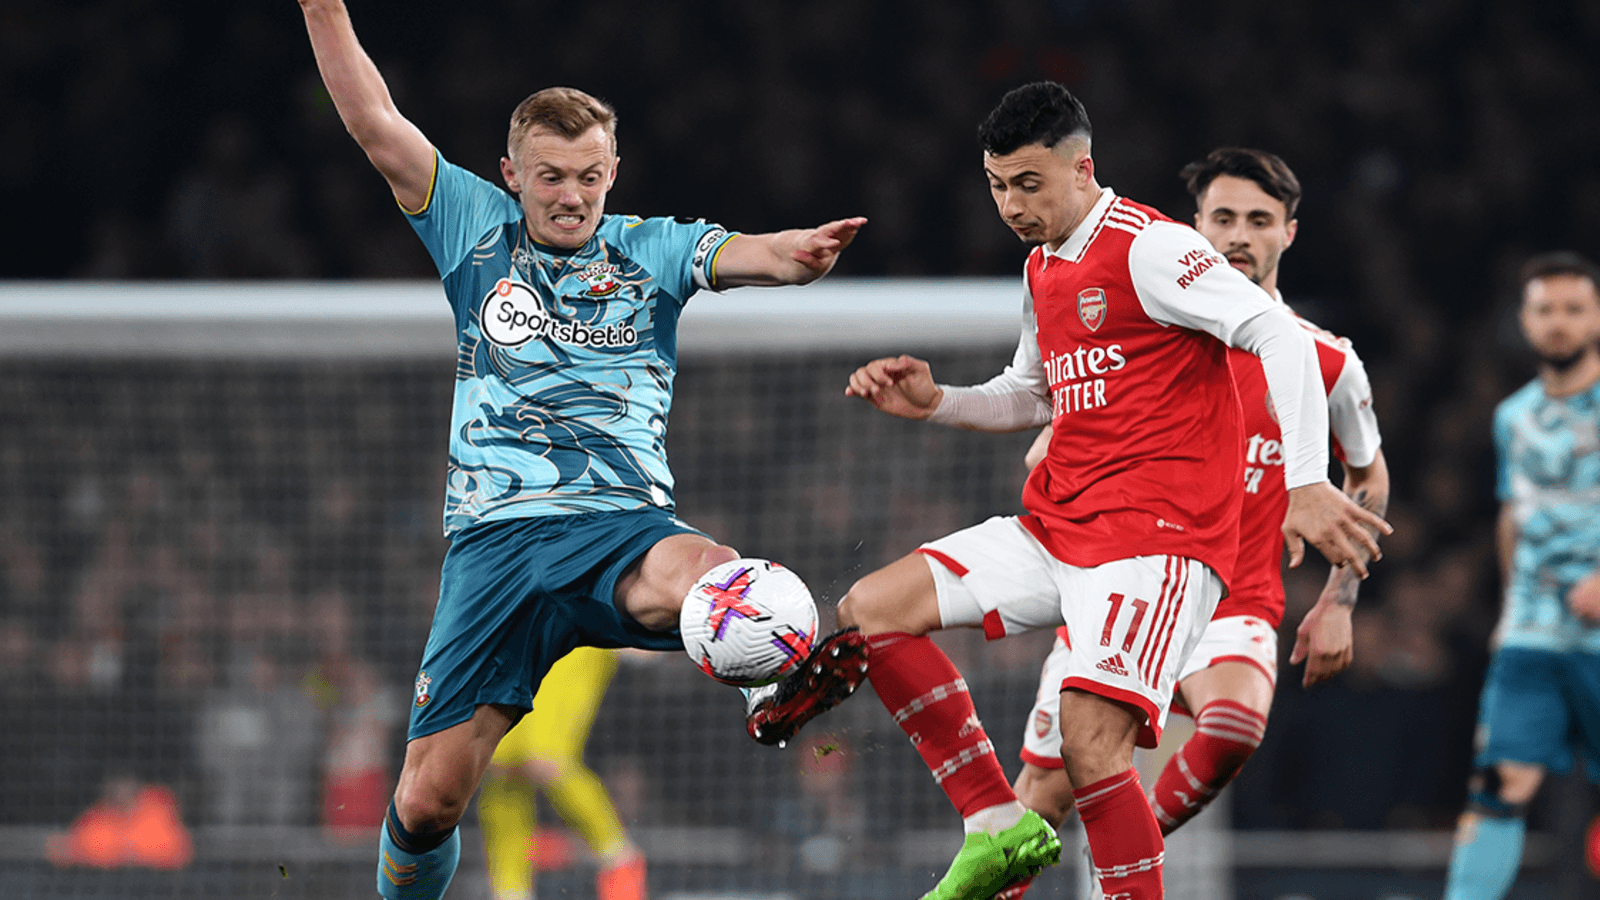 Arsenal 3-3 Southampton as Arsenal rescue draw in Premier League battle